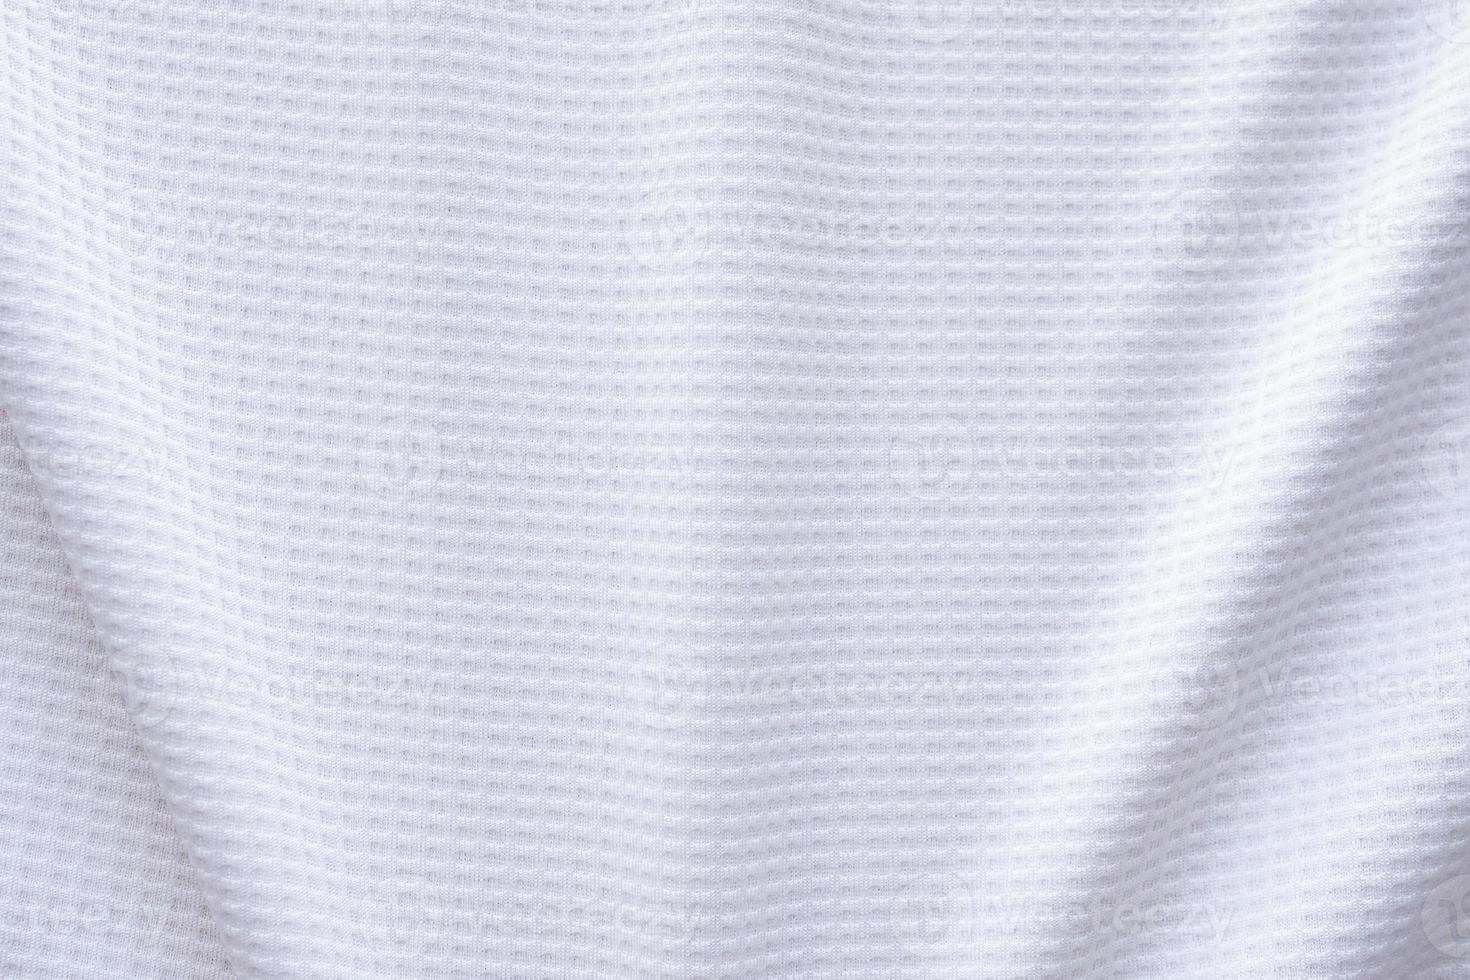 tissu de vêtements de sport blanc maillot de football texture abstrait arrière-plan photo